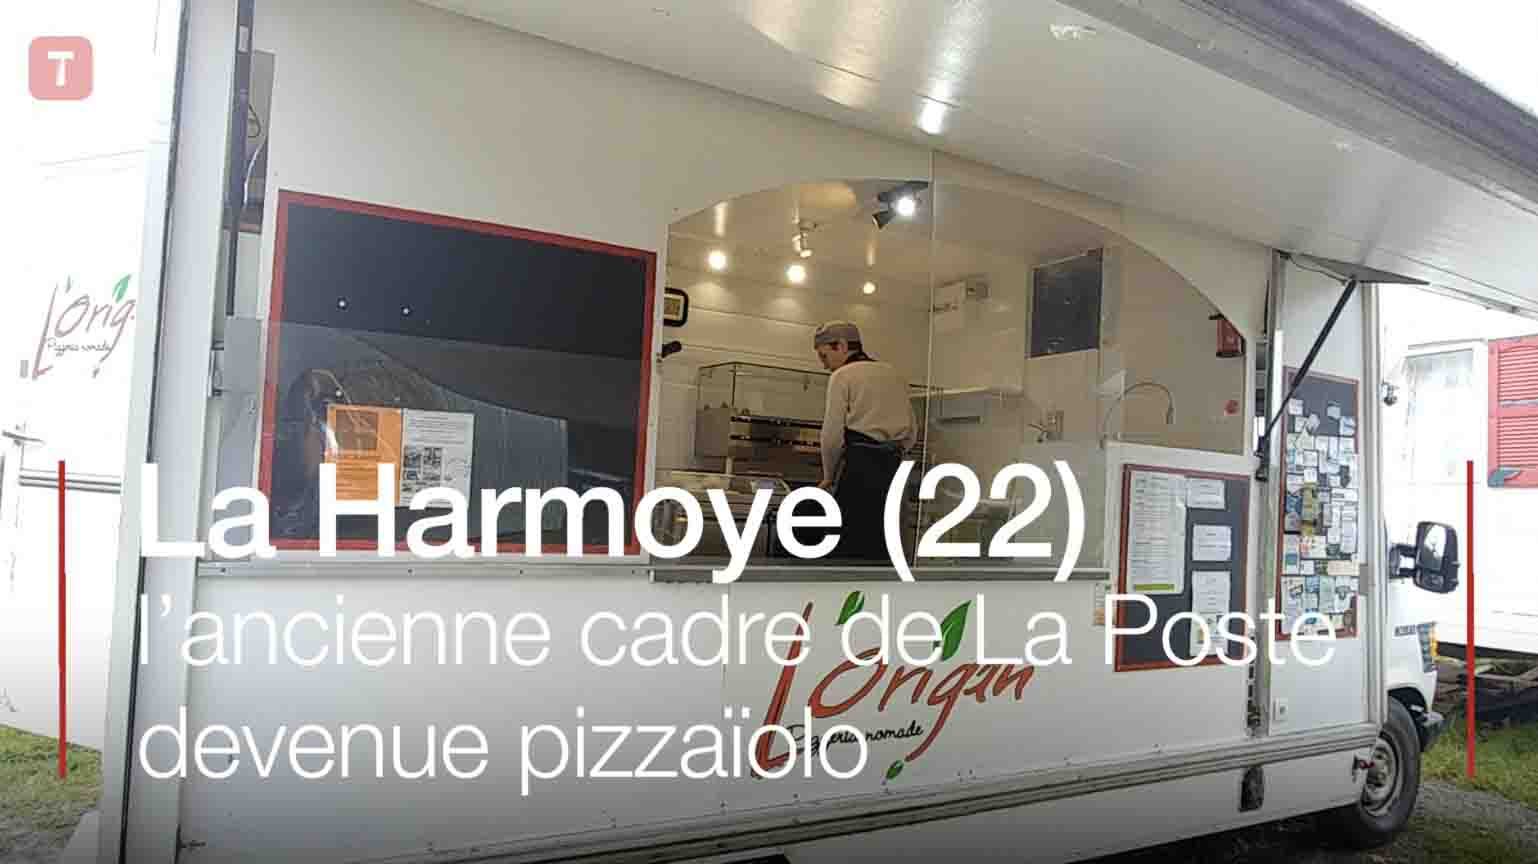 À La Harmoye, l’ancienne cadre de La Poste devenue pizzaïolo (Le Télégramme)